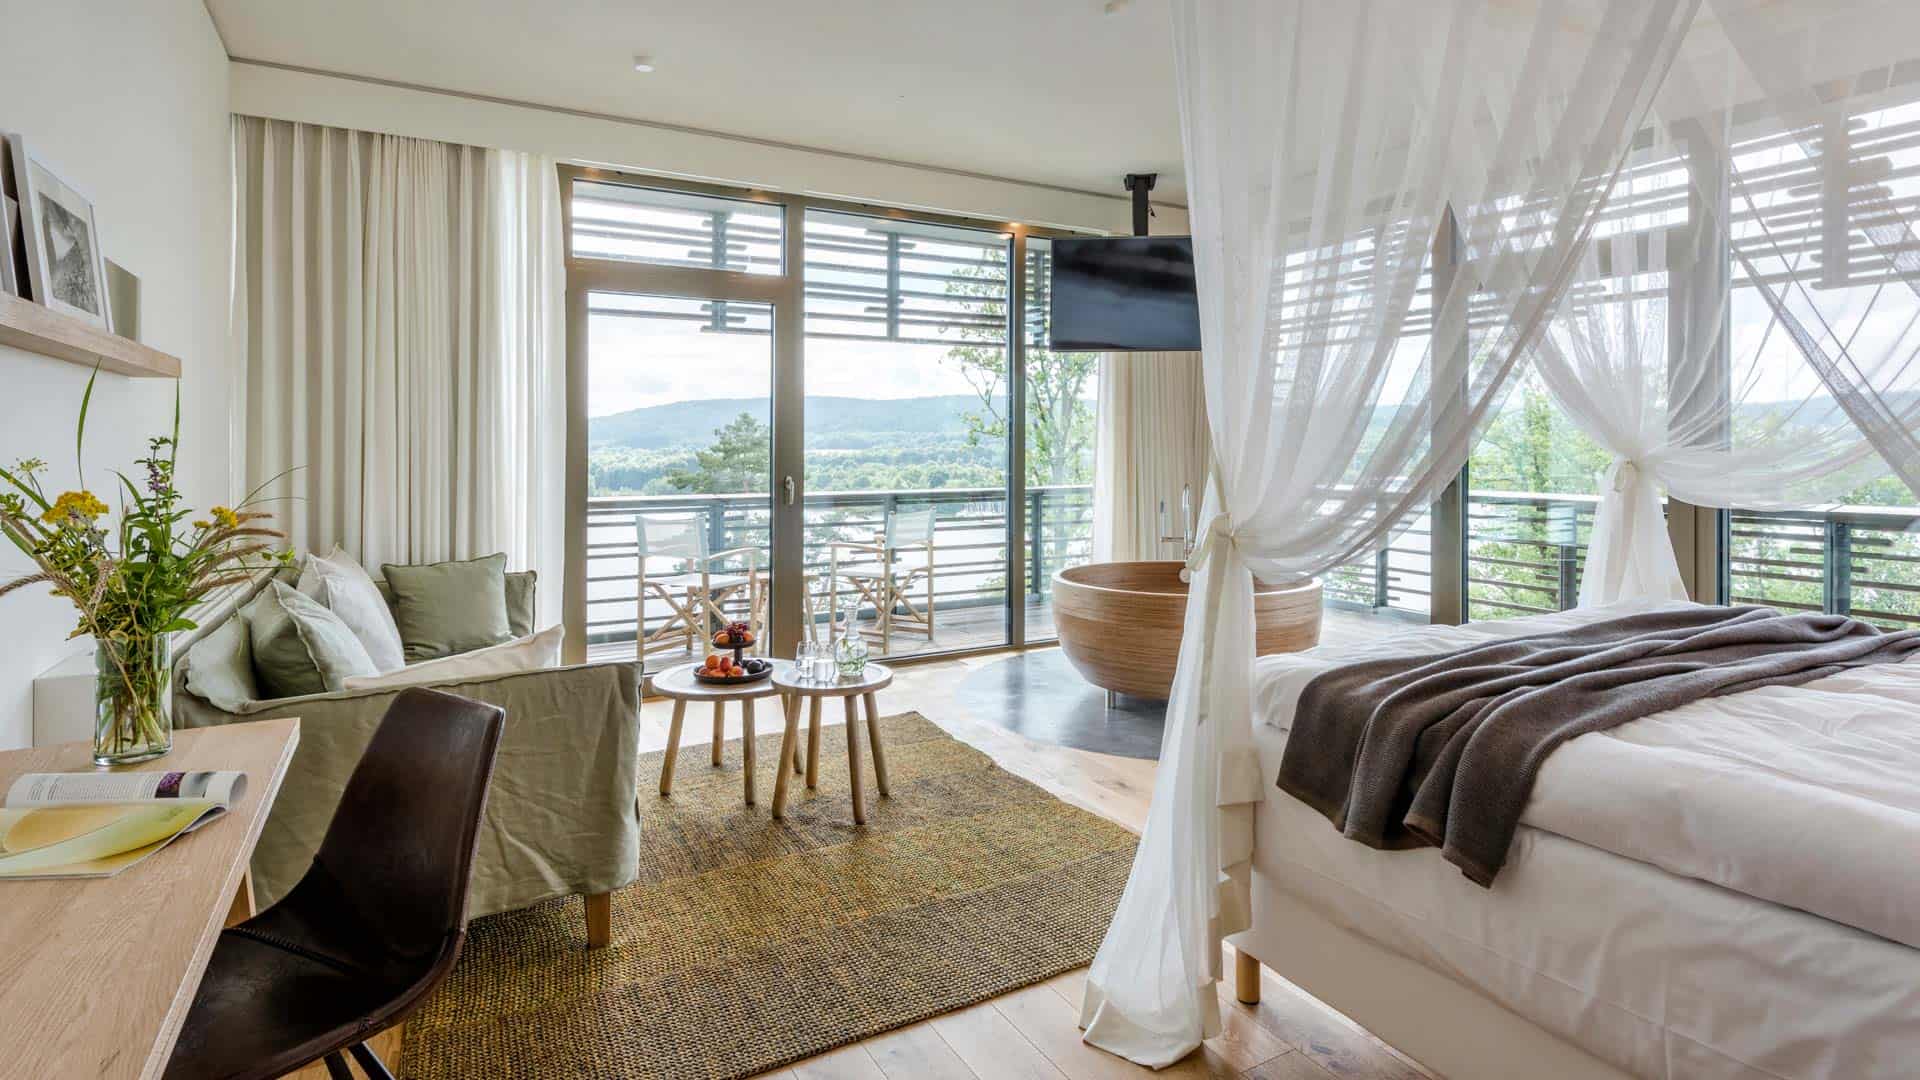 Seezeitlodge Hotel und Spa, eingerichtetes Zimmer, Balkon mit Ausblick